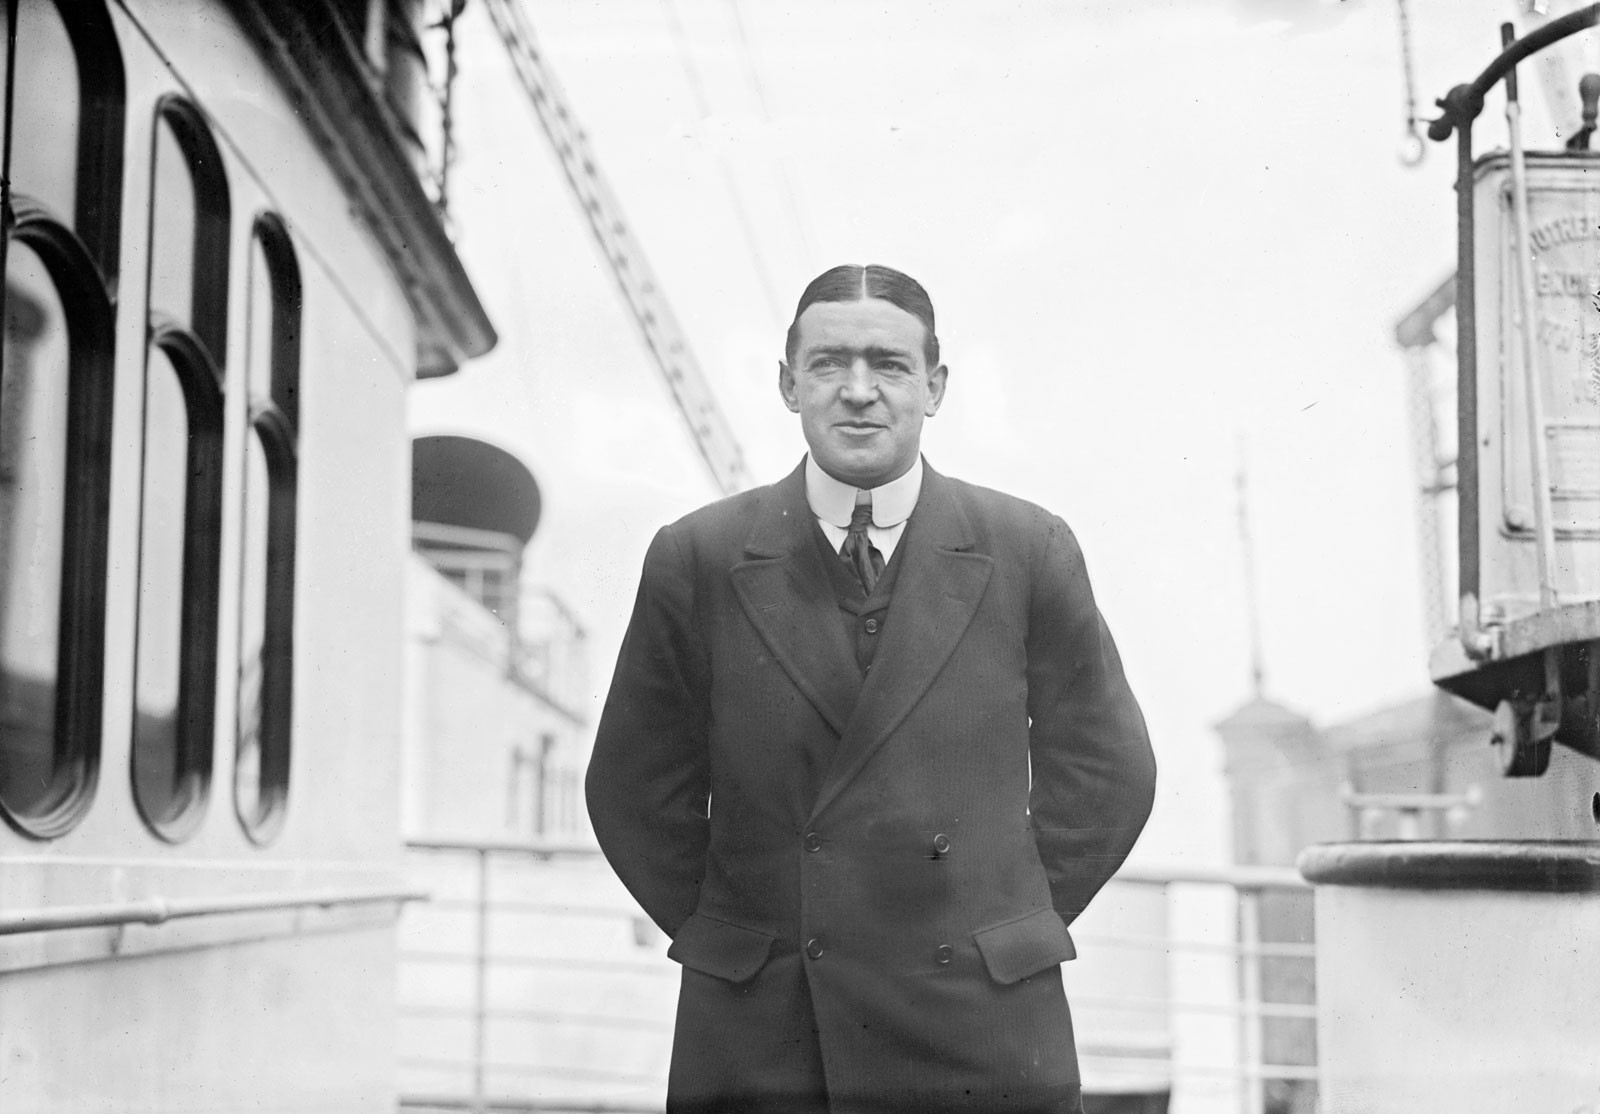 O irlandês Ernest Henry Shackleton foi um dos principais exploradores da Antártida no século XIX (Foto: Library of Congress, Washington, D.C. (neg. no. LC-DIG-ggbain-04778)/Britannica.com)